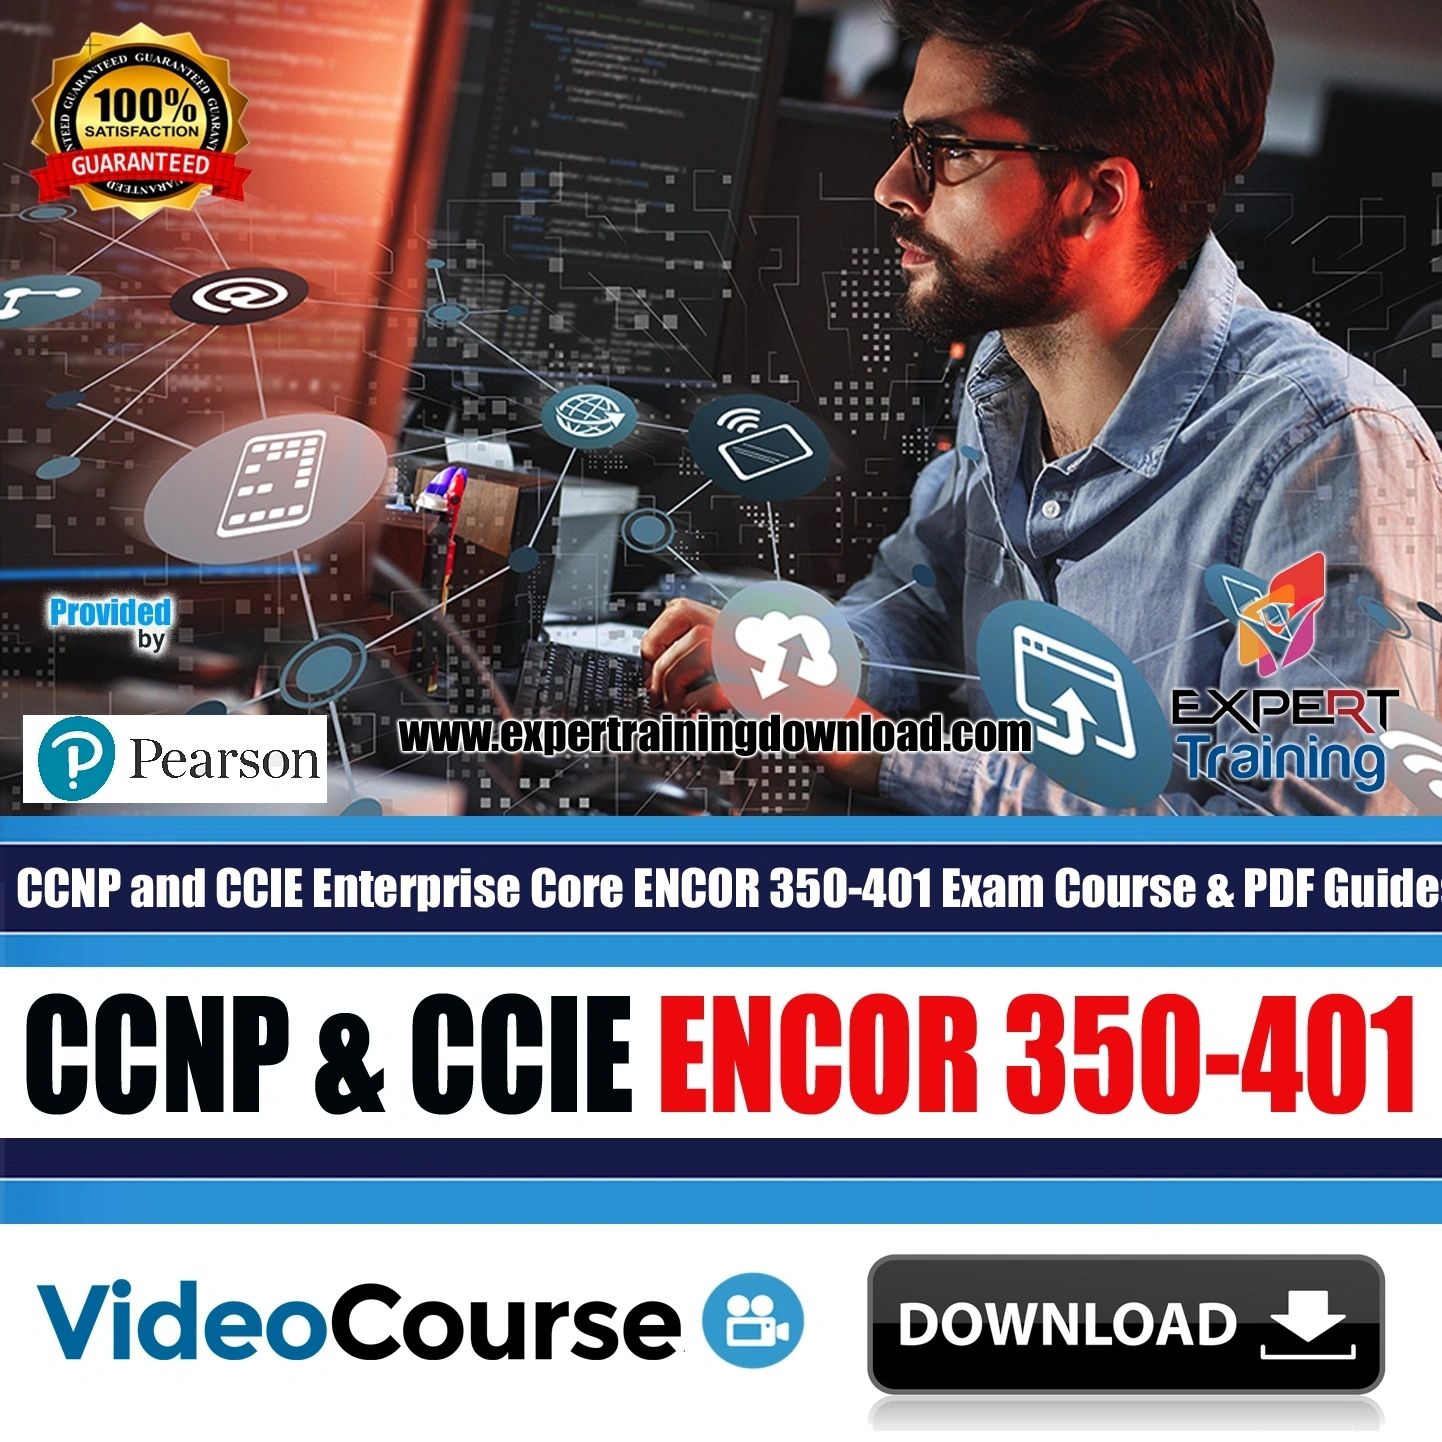 CCNP and CCIE Enterprise Core ENCOR 350-401 Exam Course & PDF Guides